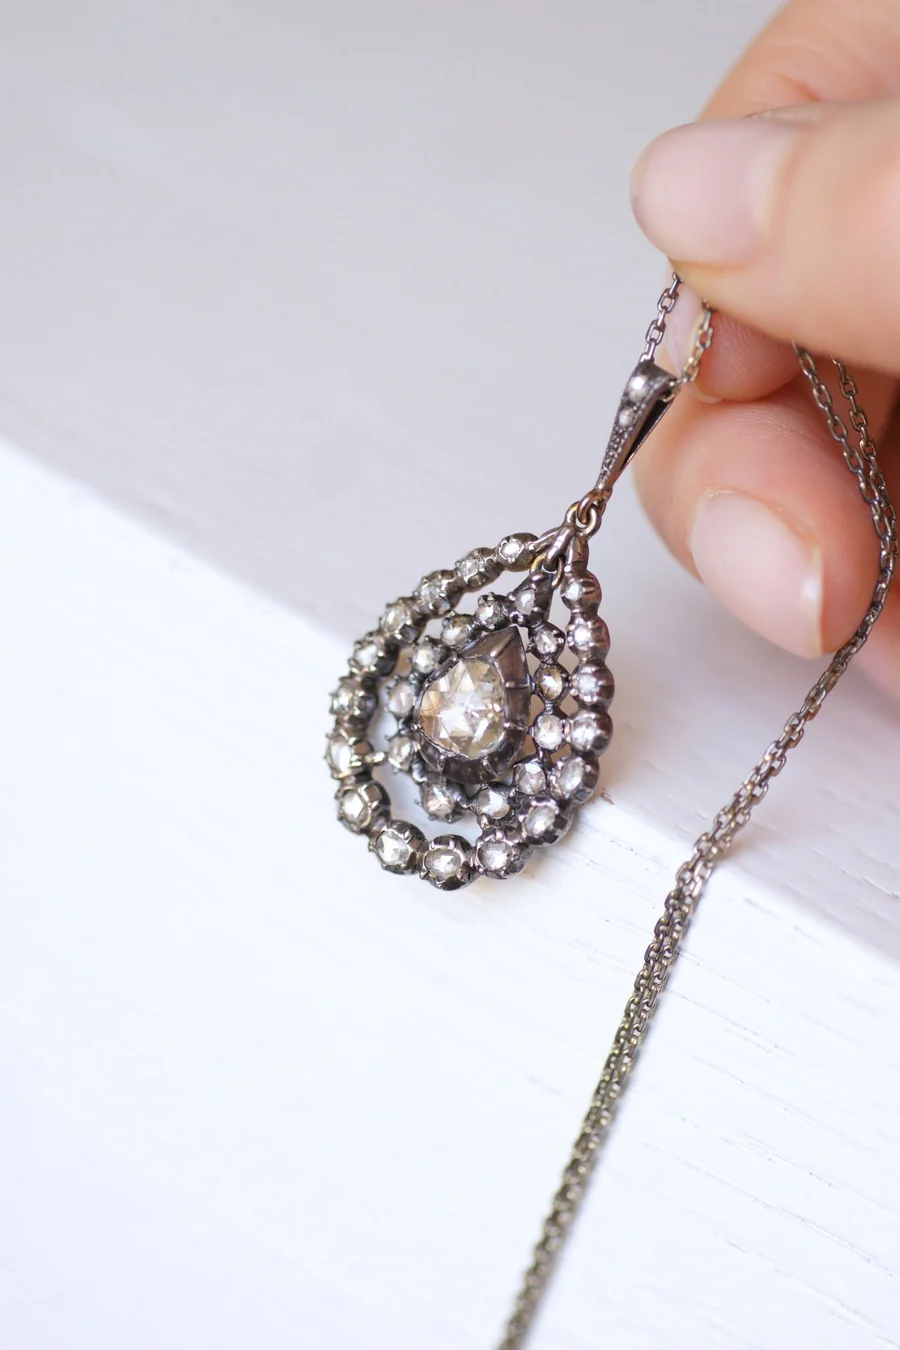 Antique silver drop pendant necklace, rose cut diamonds - Galerie Pénélope